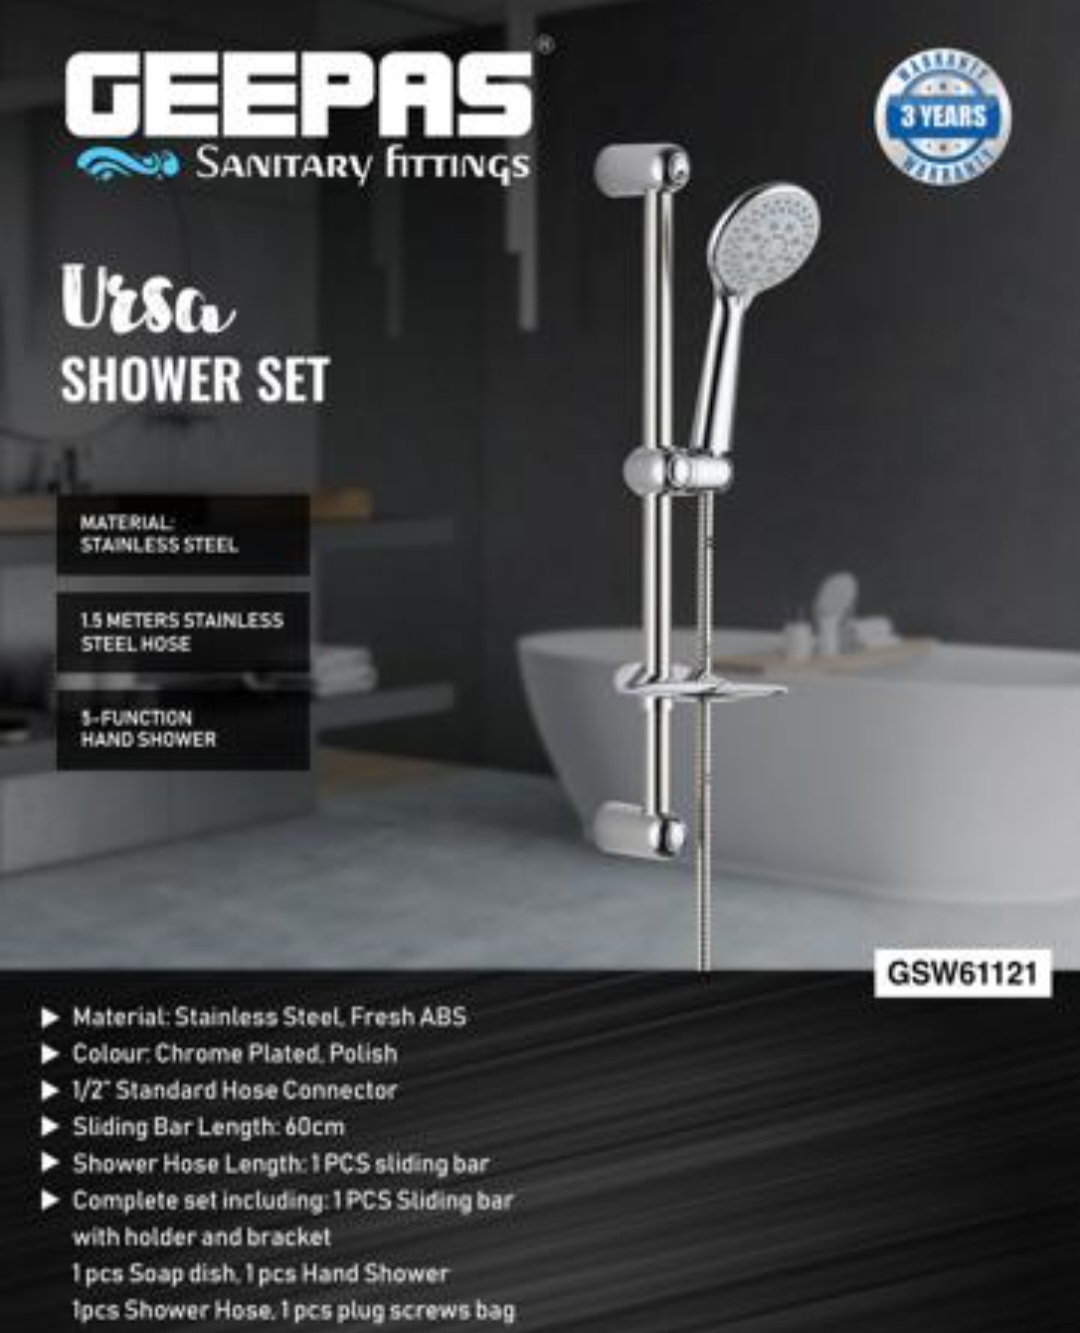 شیر آلات میکسر حمام با ست دوش جیپاس مدل   GSW61121تجهیزات حمام با نام تجاری Geepas Tools است./ ارسال رایگان